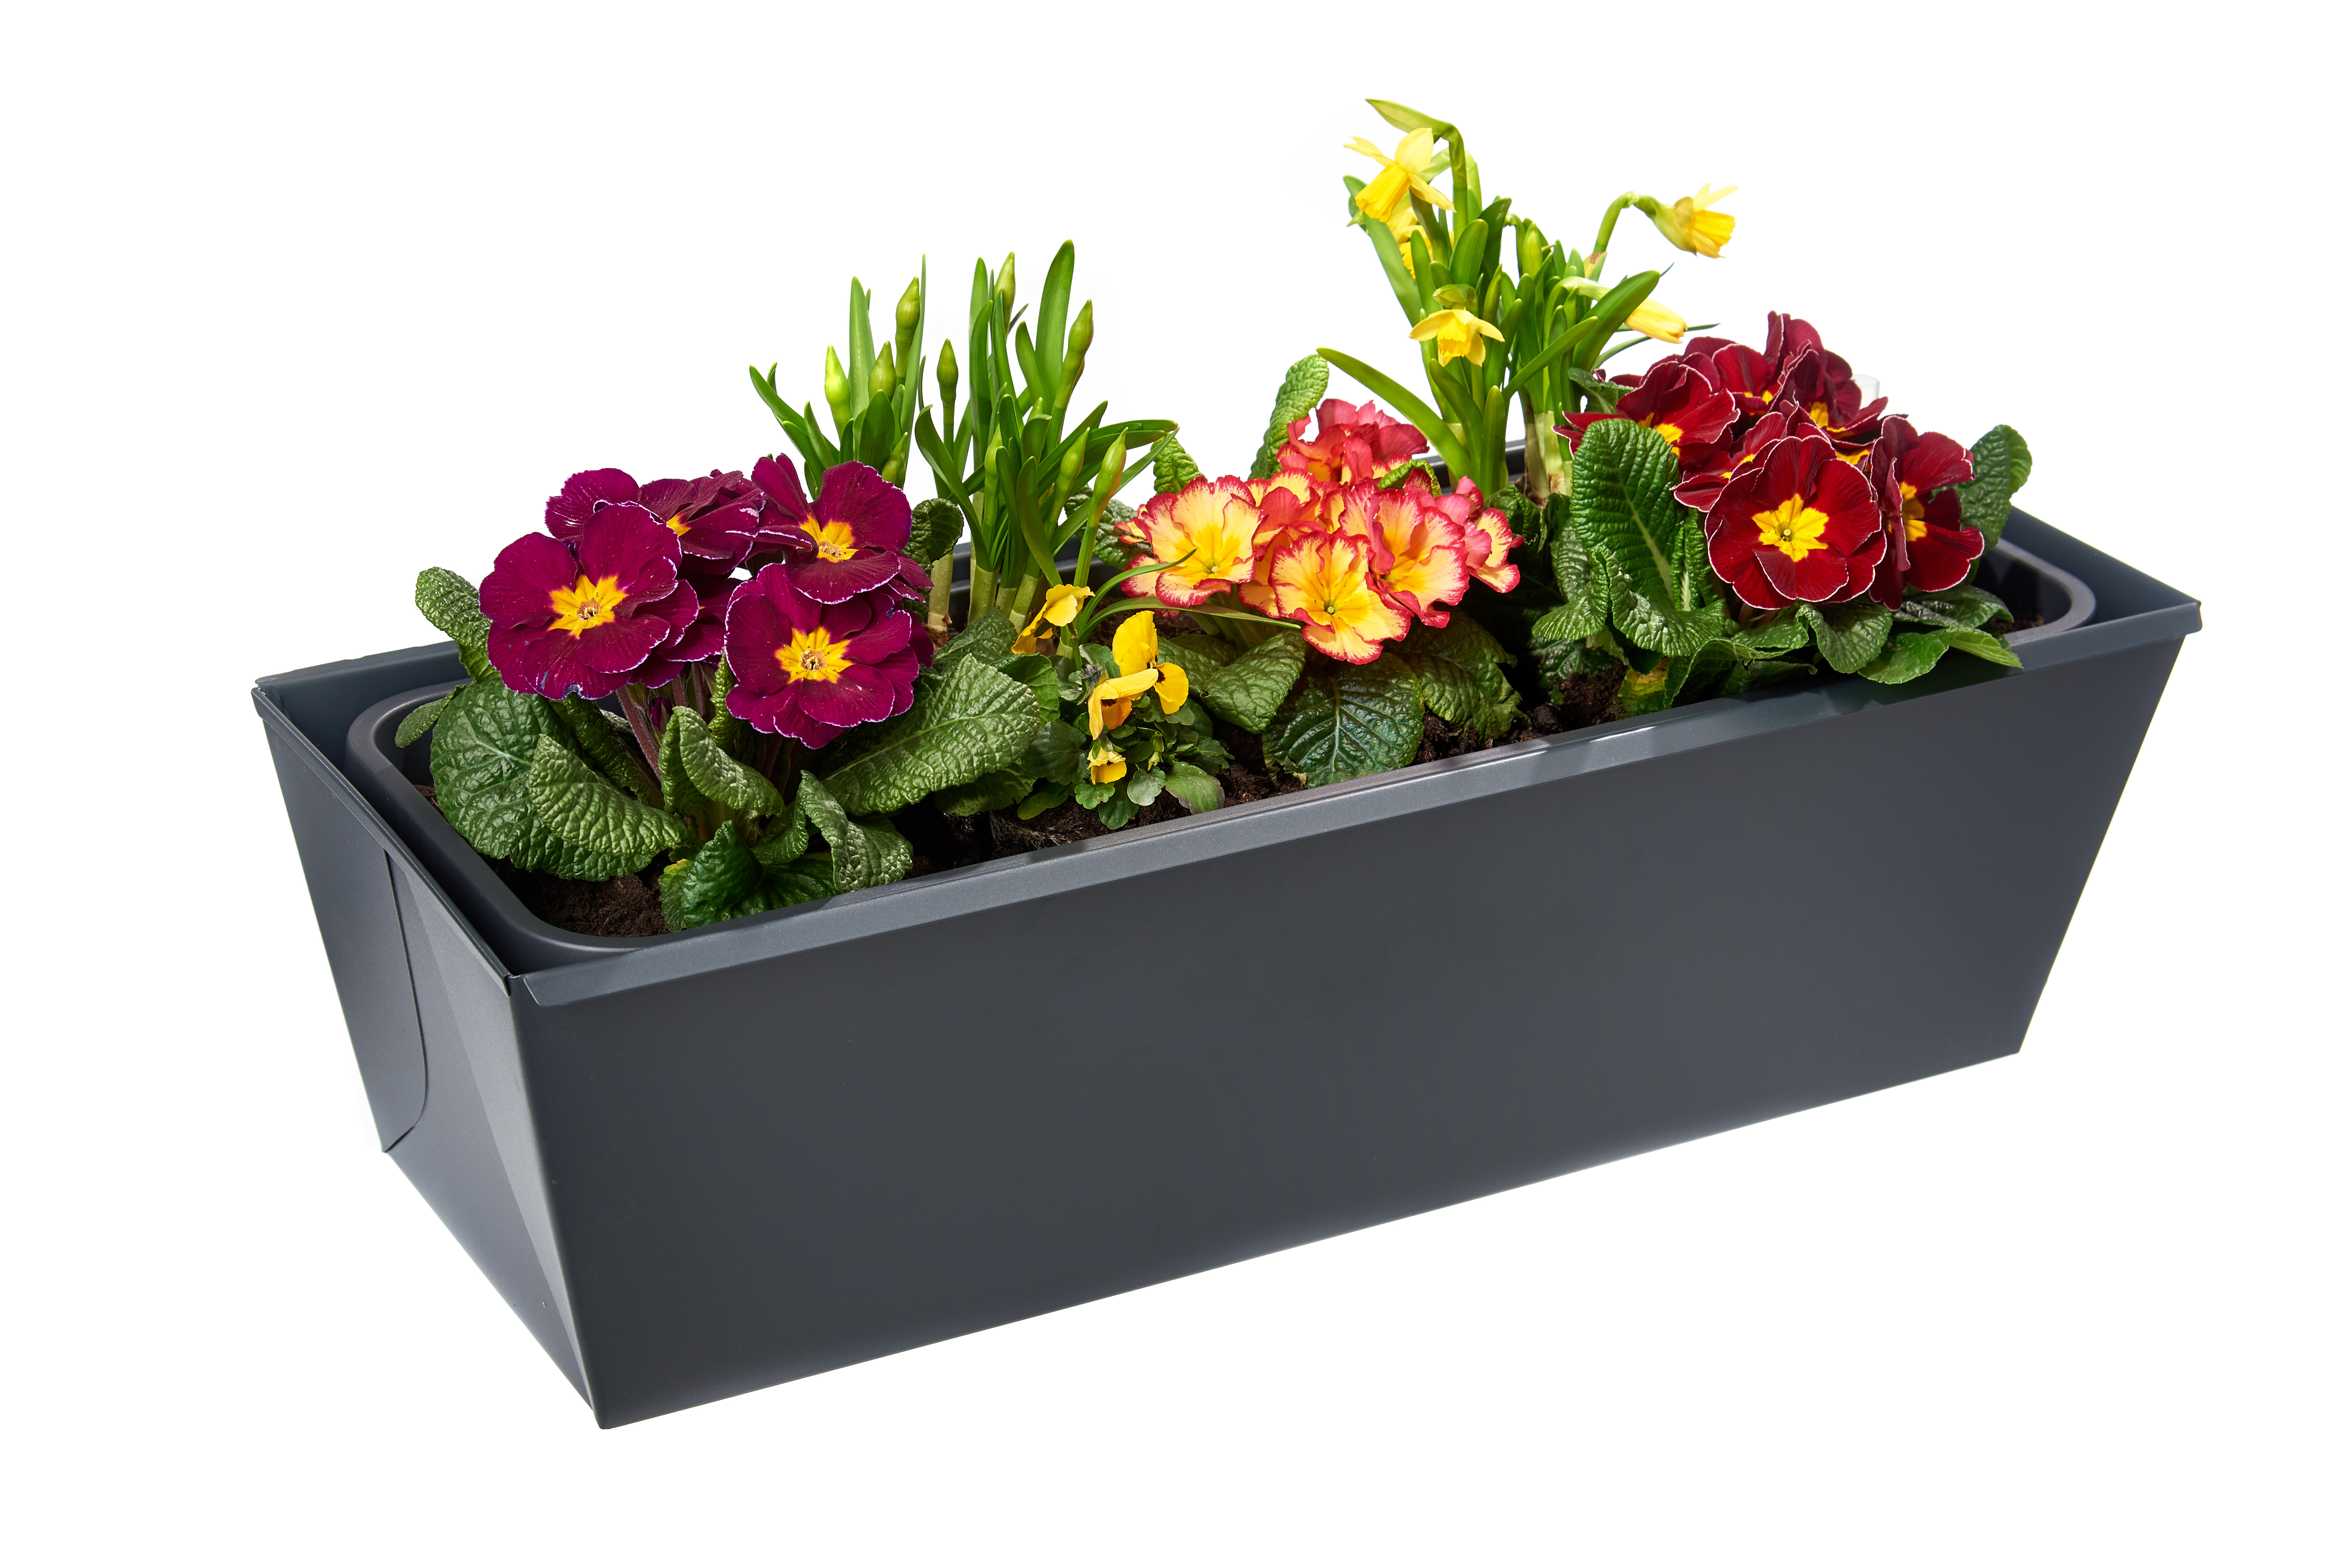 B-Ware: gabioka flowerbox 60cm de luxe anthrazit pulverbeschichtet (RAL 7016 glatt matt) mit Wasserstandsanzeige und Wasserspeicher 